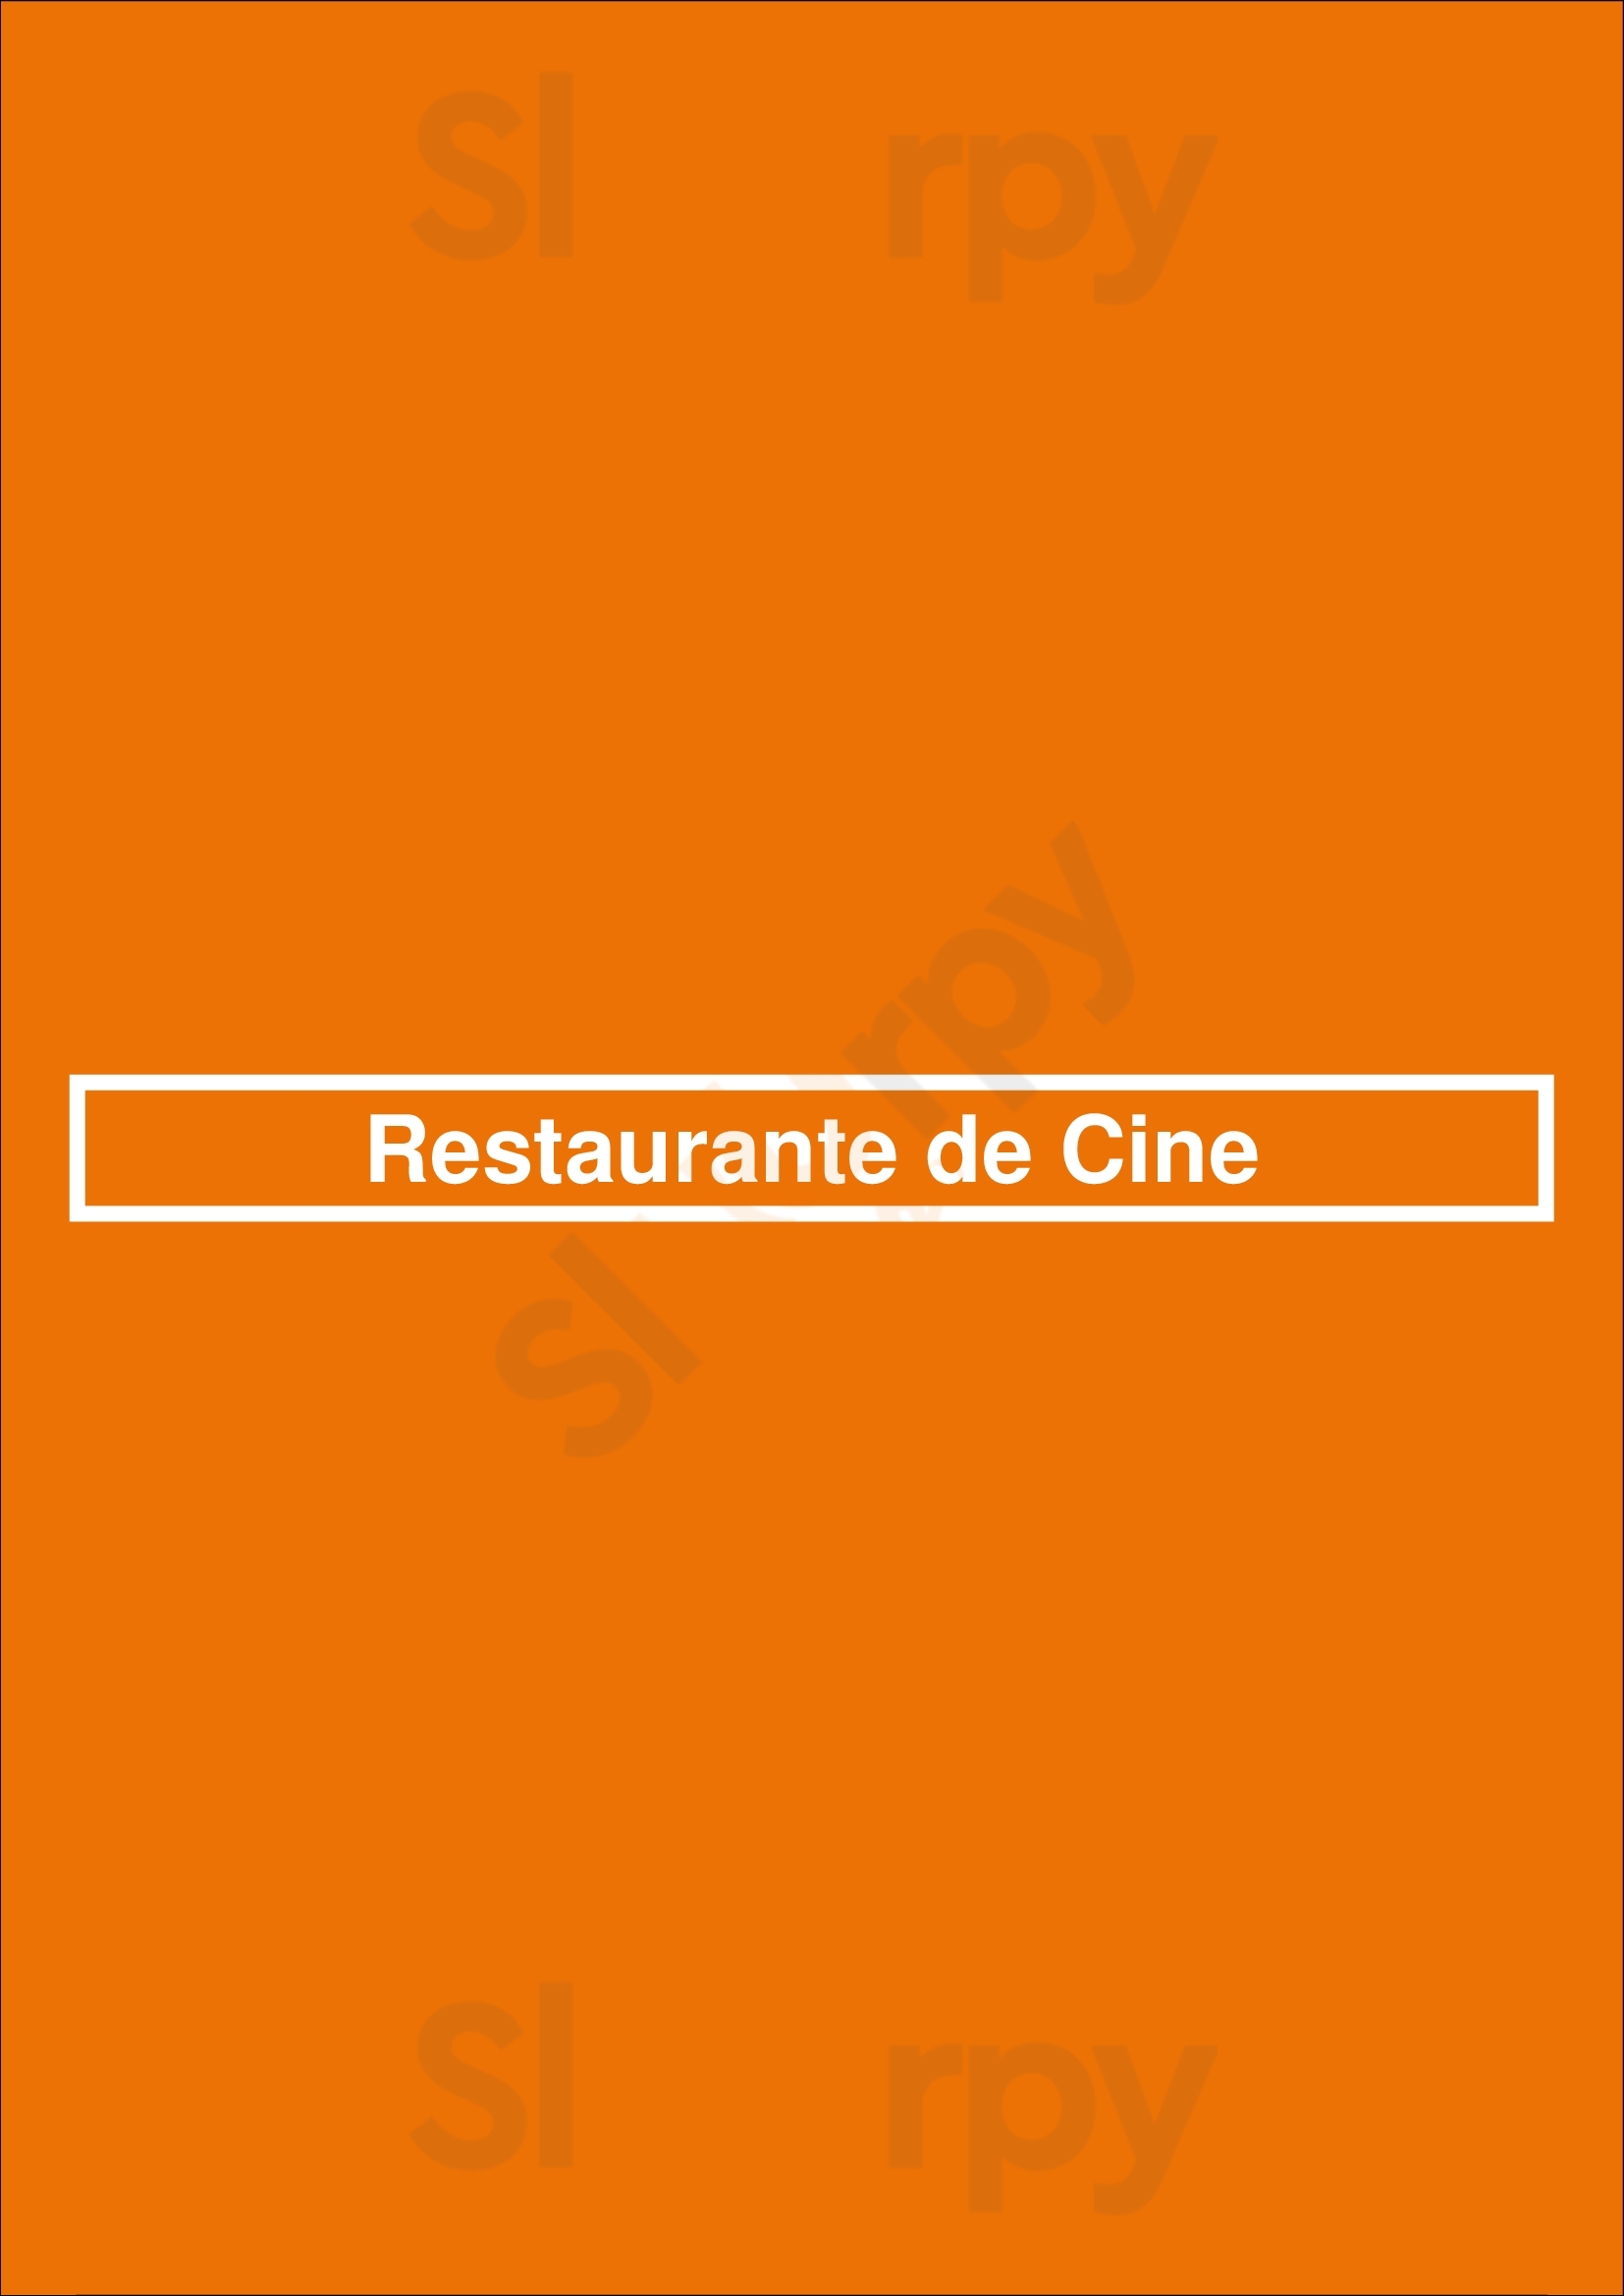 Restaurante De Cine Ávila Menu - 1